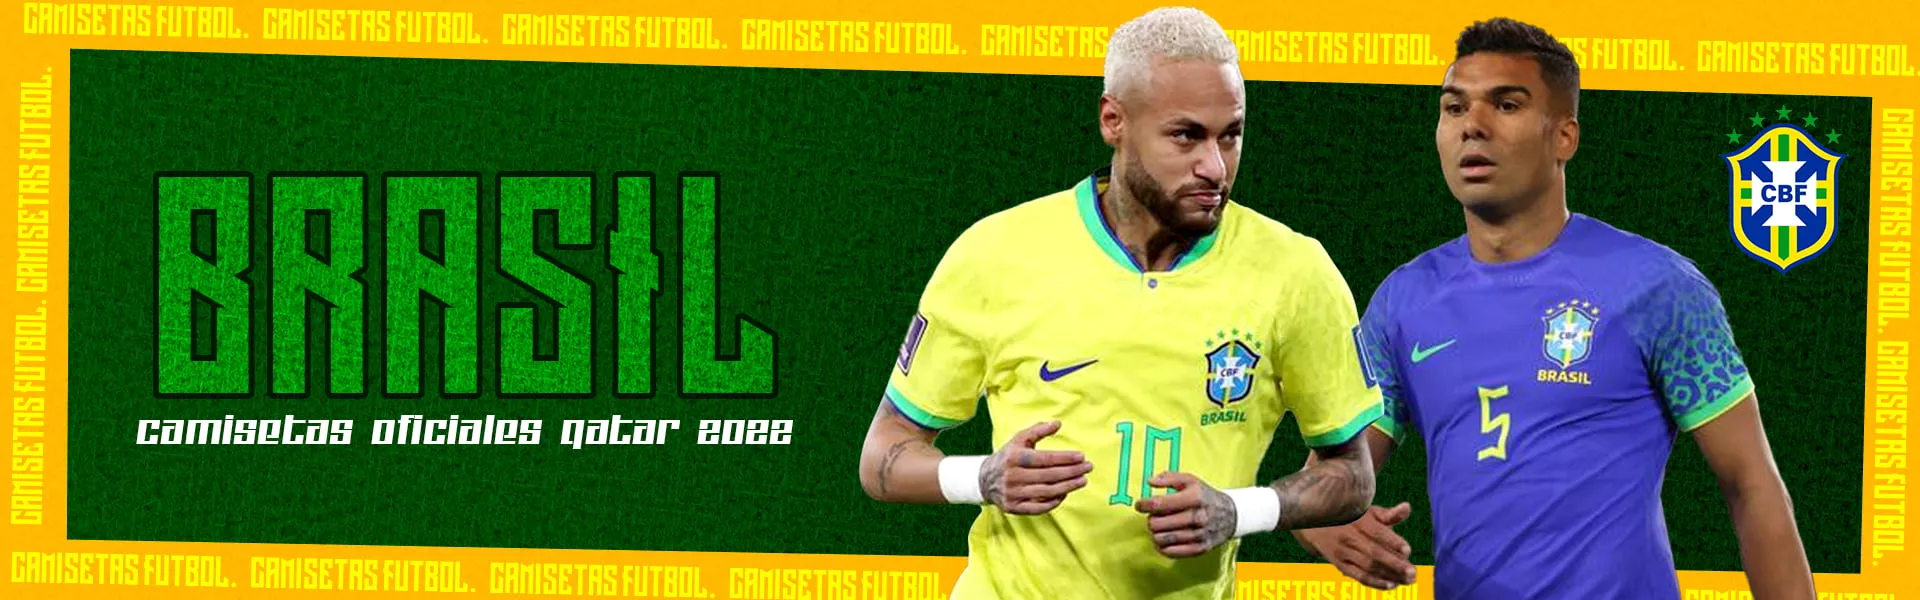 Camiseta de Fútbol Brazil Tienda en Línea